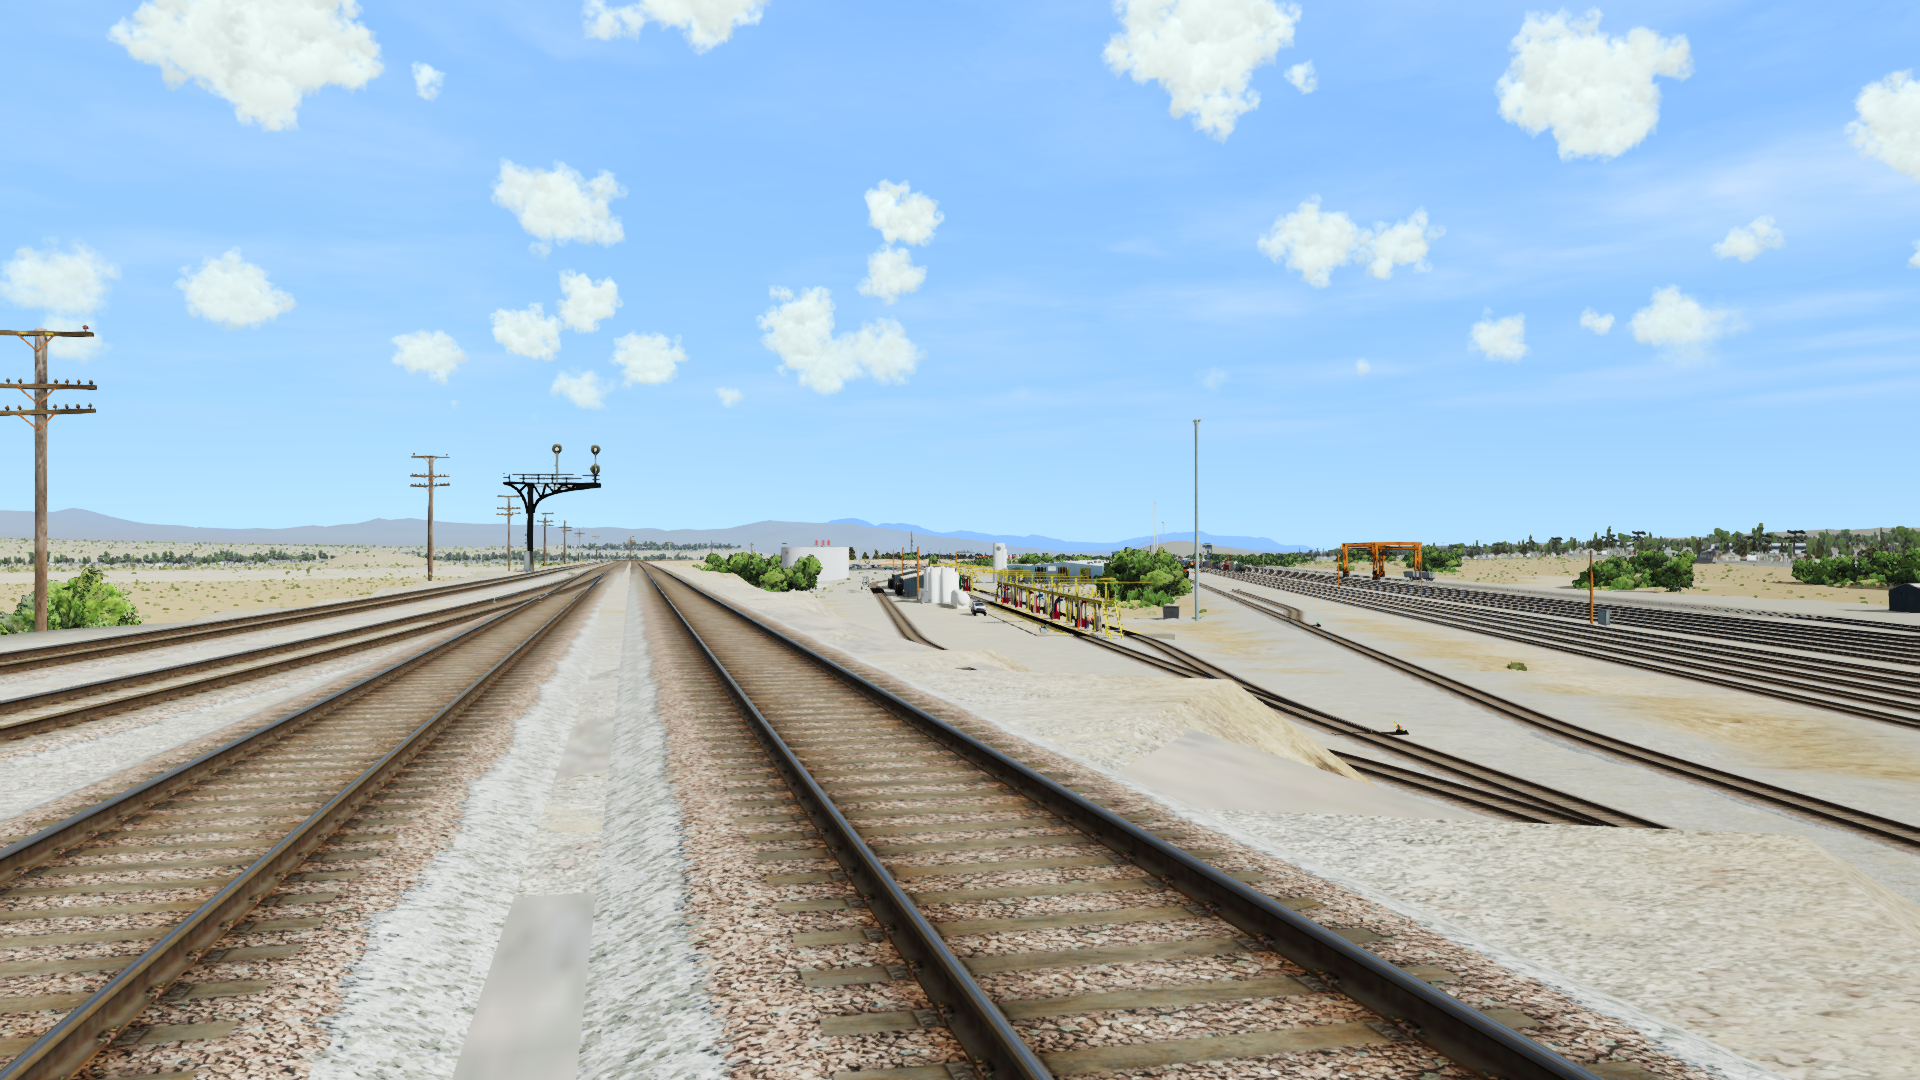 run 8 train simulator free download